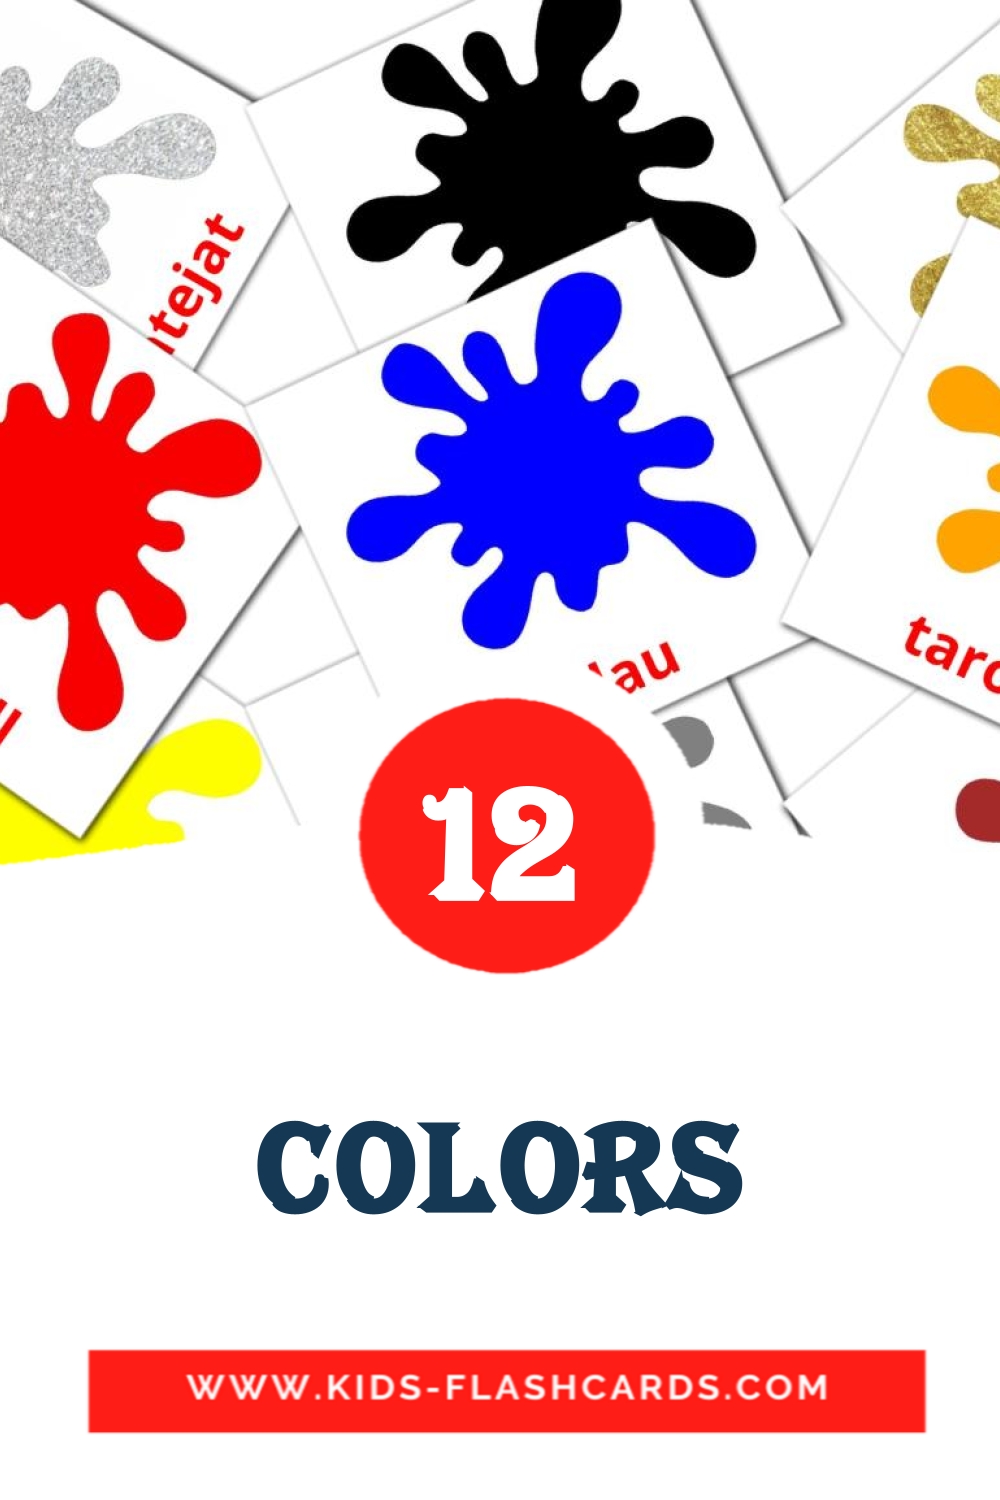 12 Colors fotokaarten voor kleuters in het catalaans